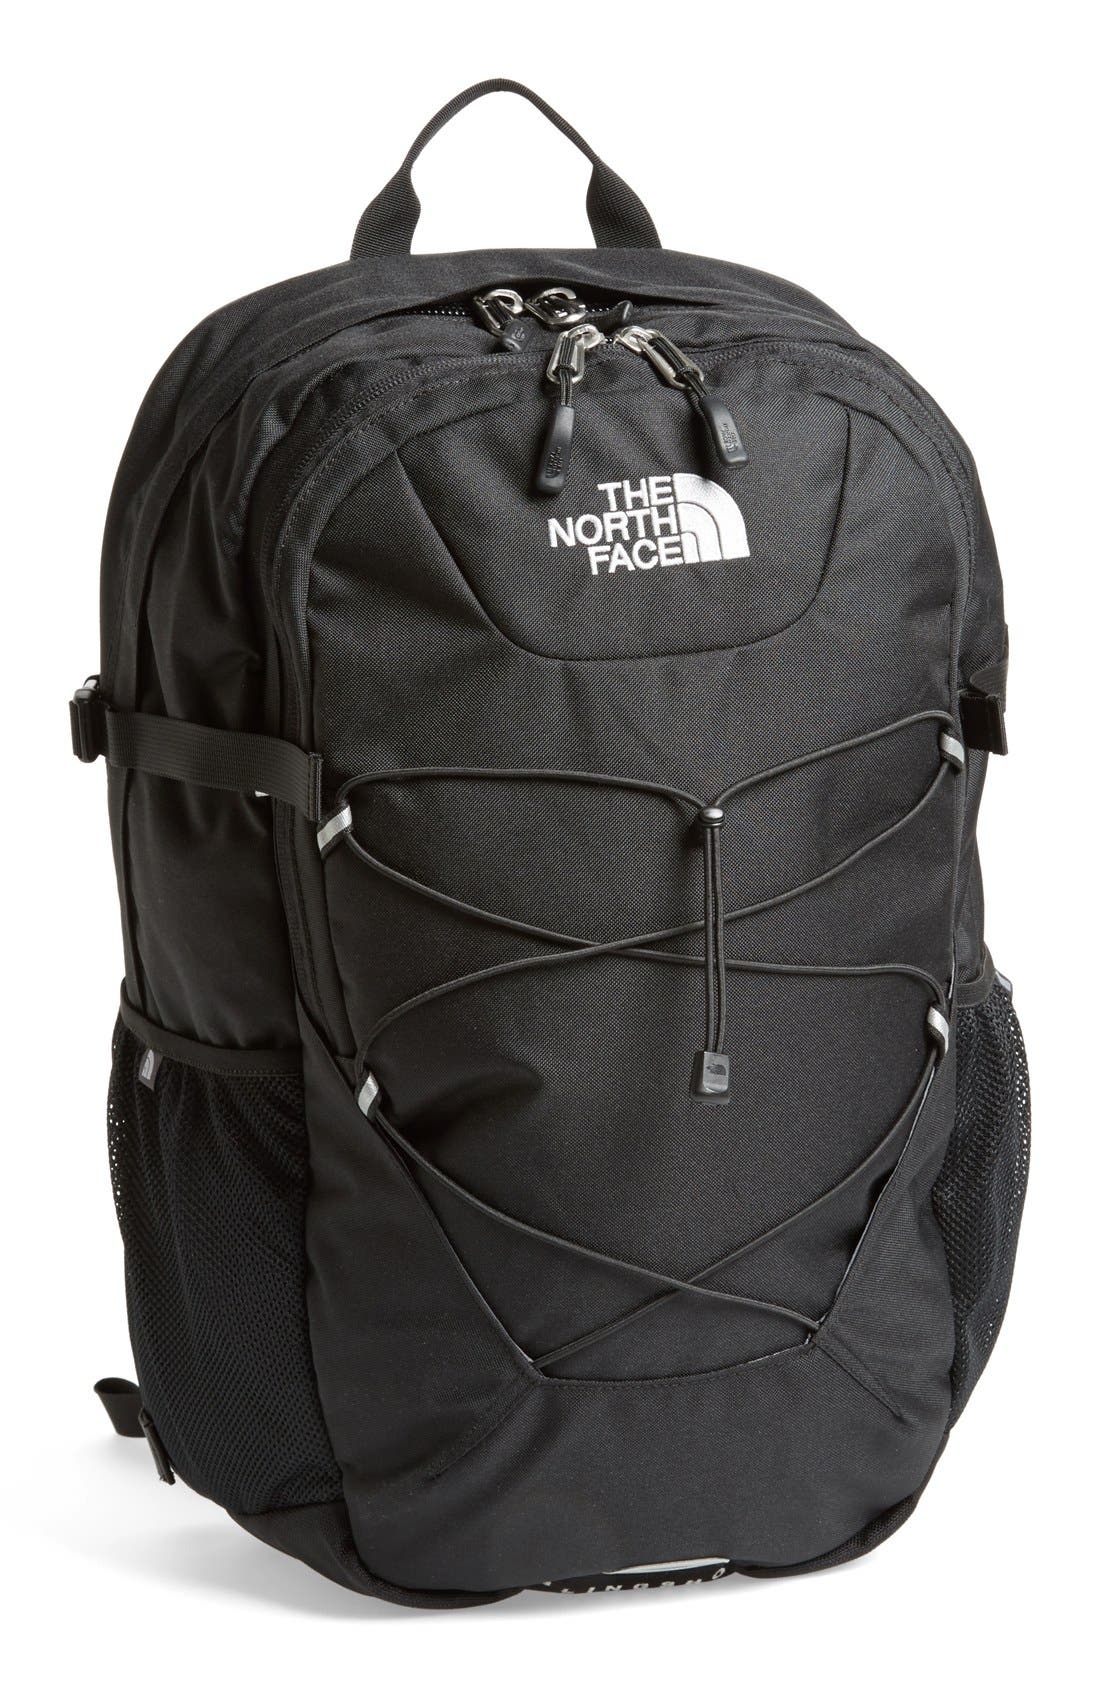 the north face slingshot backpack